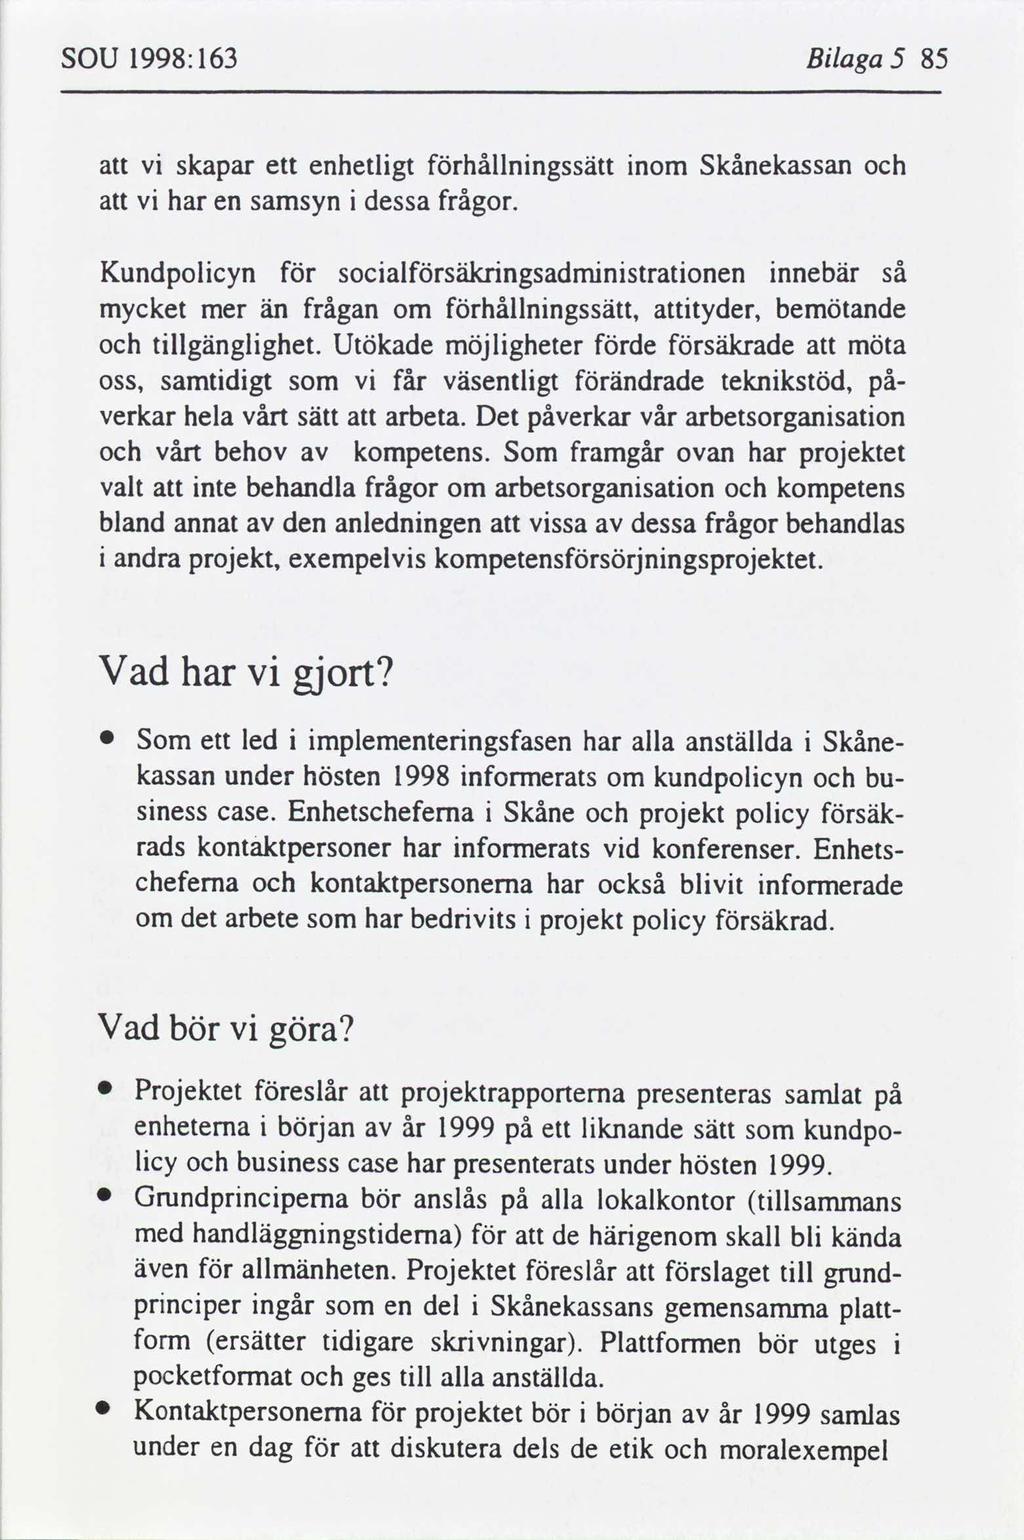 sou 1998:163 Blaga 5 85 skapar ett enhetlgt hållnngssätt nom Skånekassan har en samsyn dessa frågor.